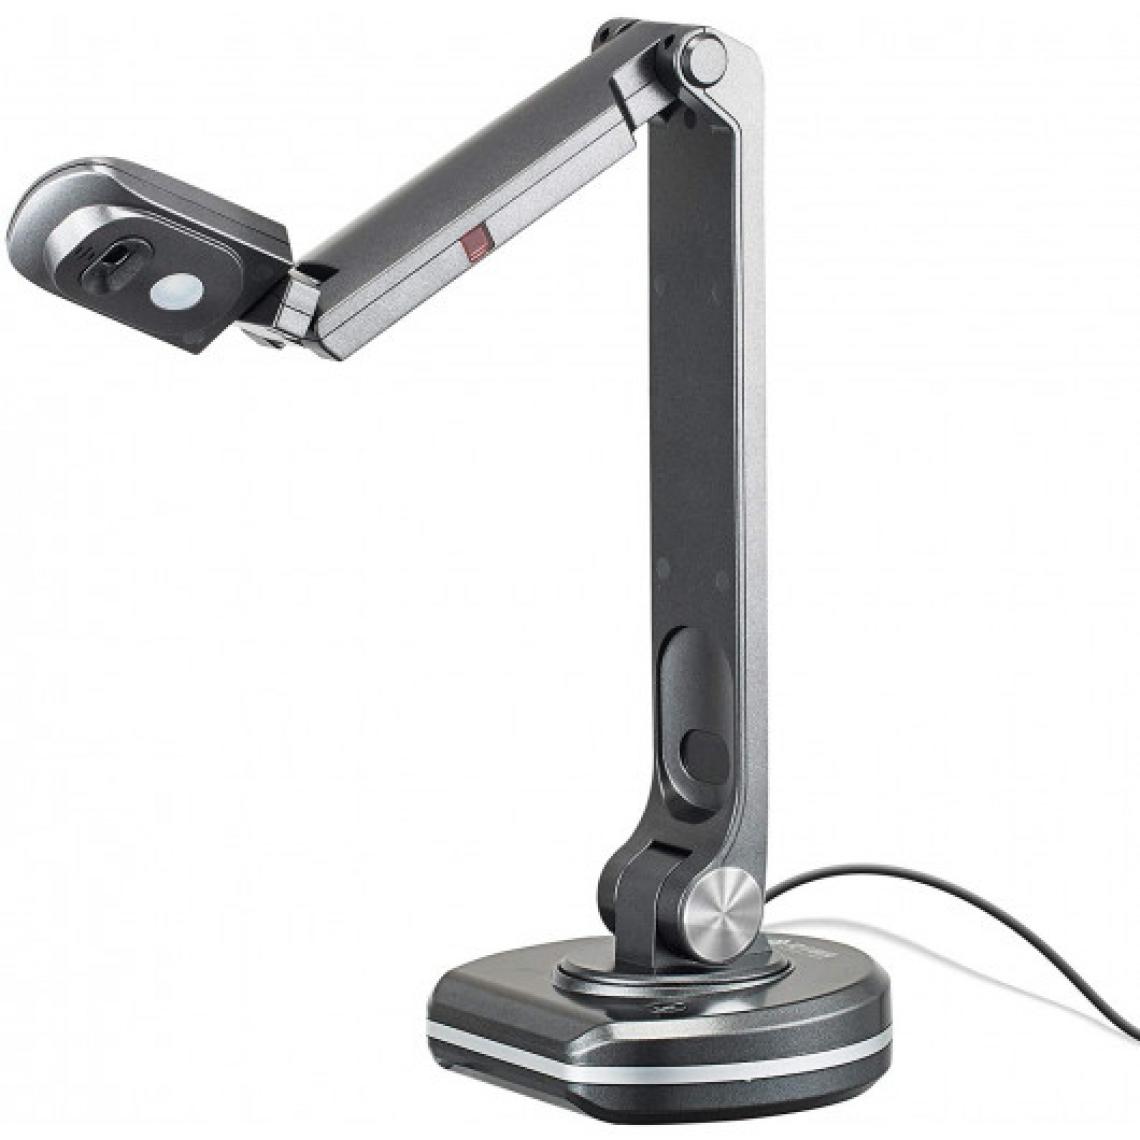 Ofs Selection - Joyusing V500S, la caméra pour documents - Caméra de surveillance connectée